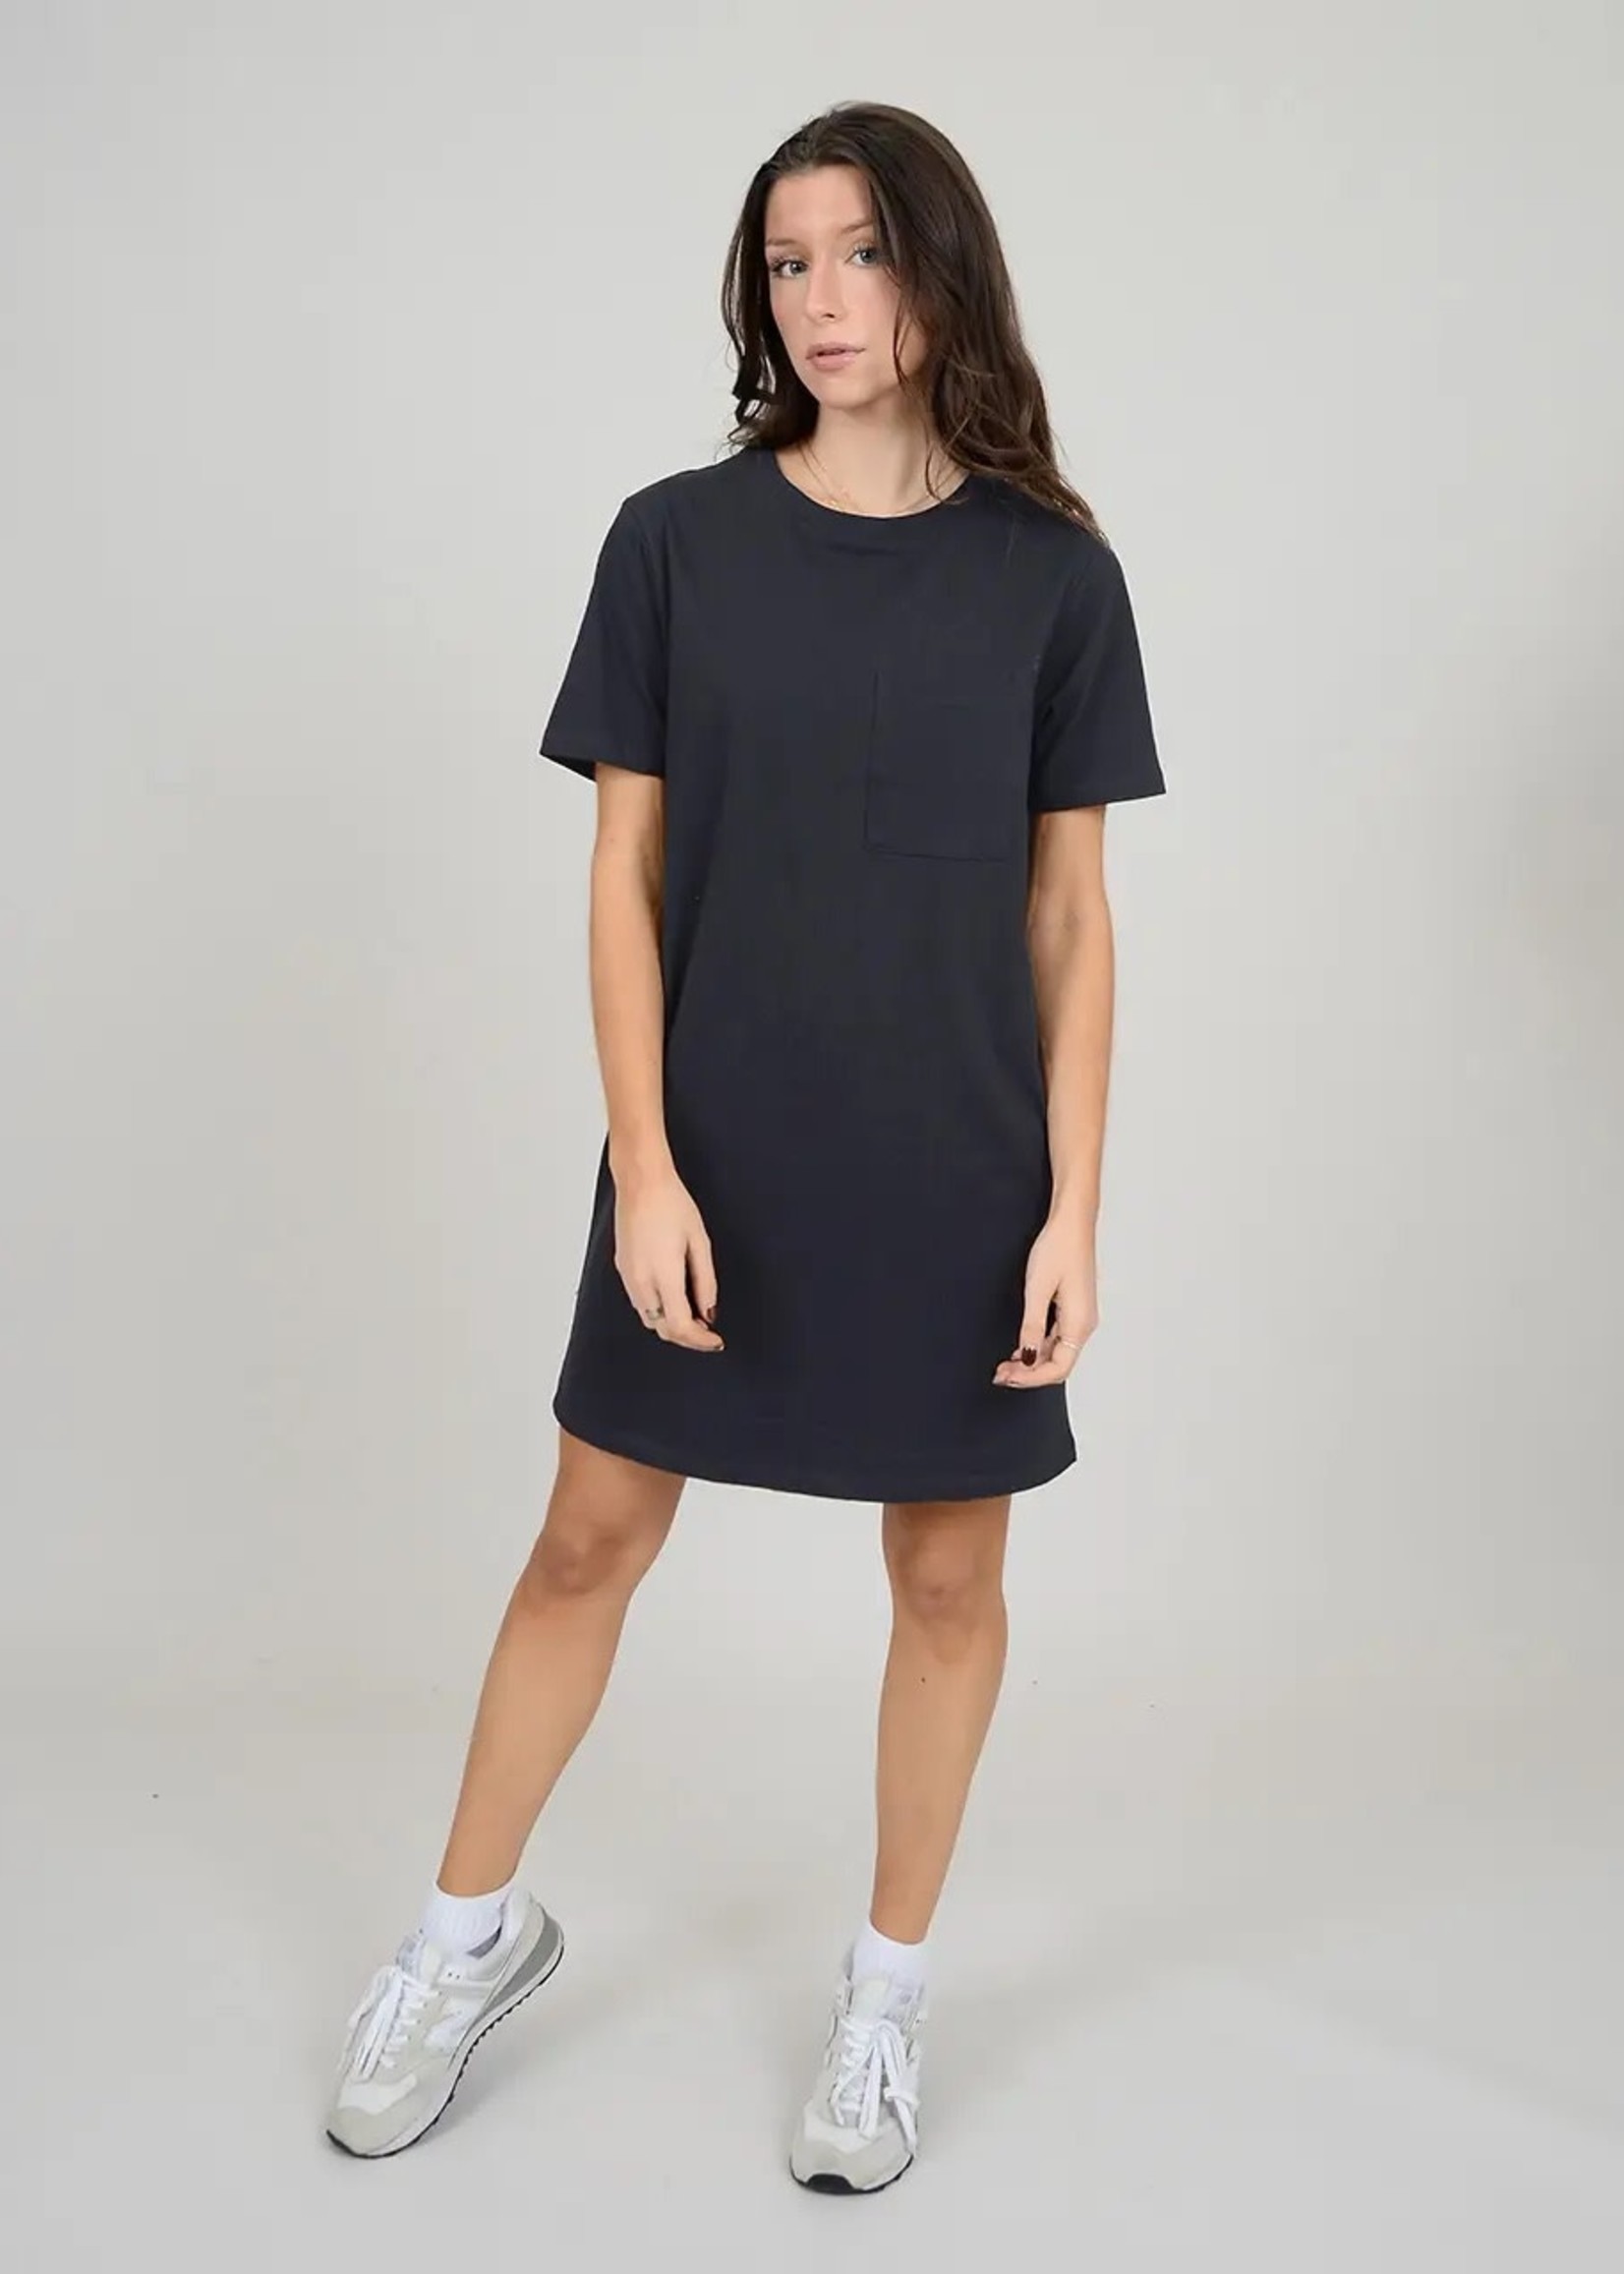 https://cdn.shoplightspeed.com/shops/618700/files/51888979/1652x2313x1/rd-style-dara-t-shirt-dress.jpg